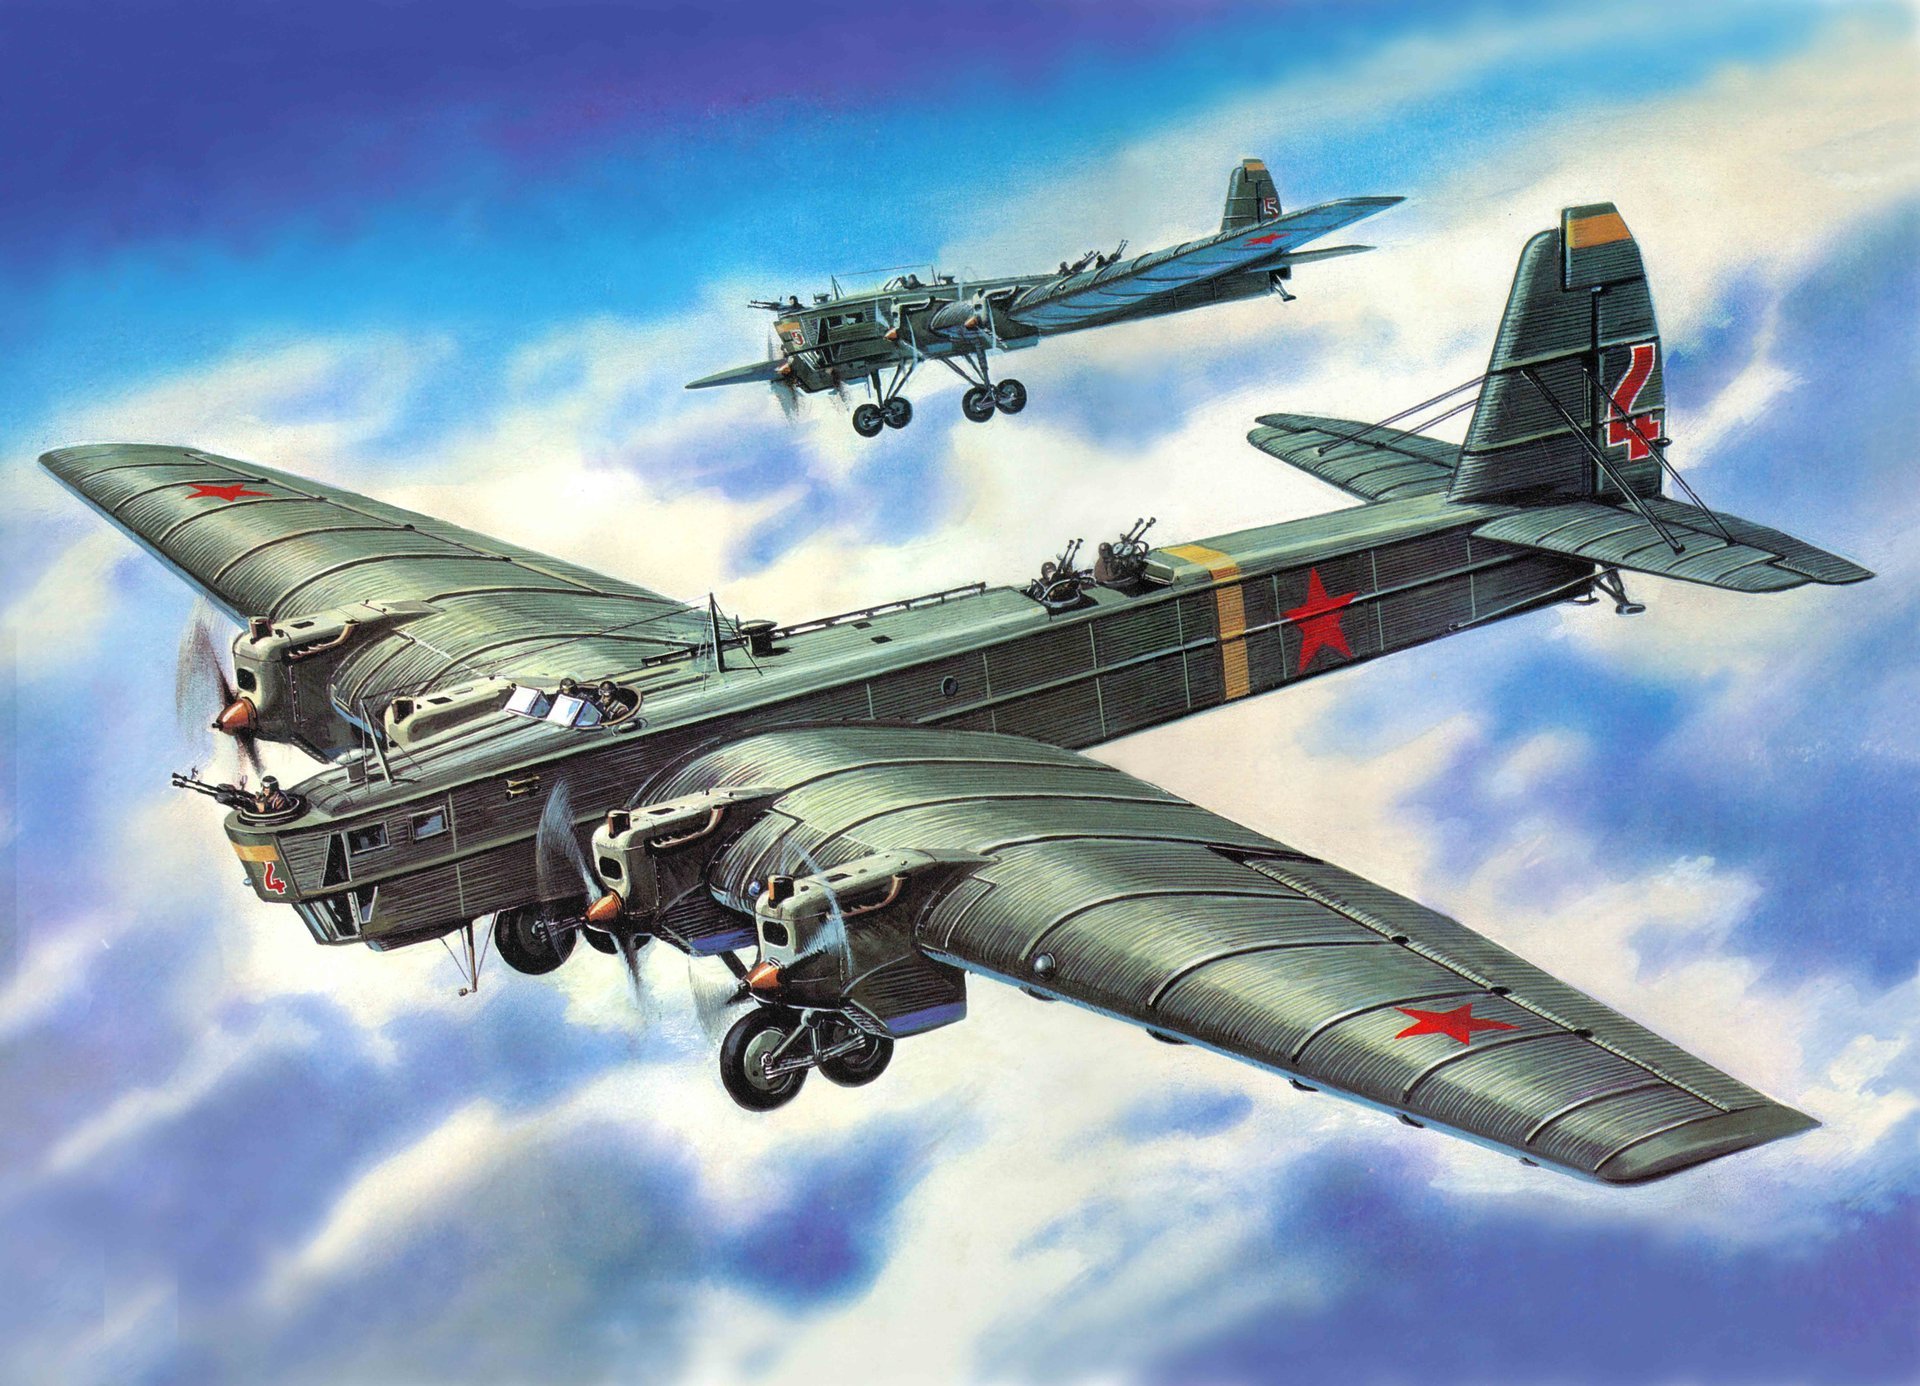 Фиат cr-32 "чирри"
лучший истребитель-биплан между двумя мировыми войнами